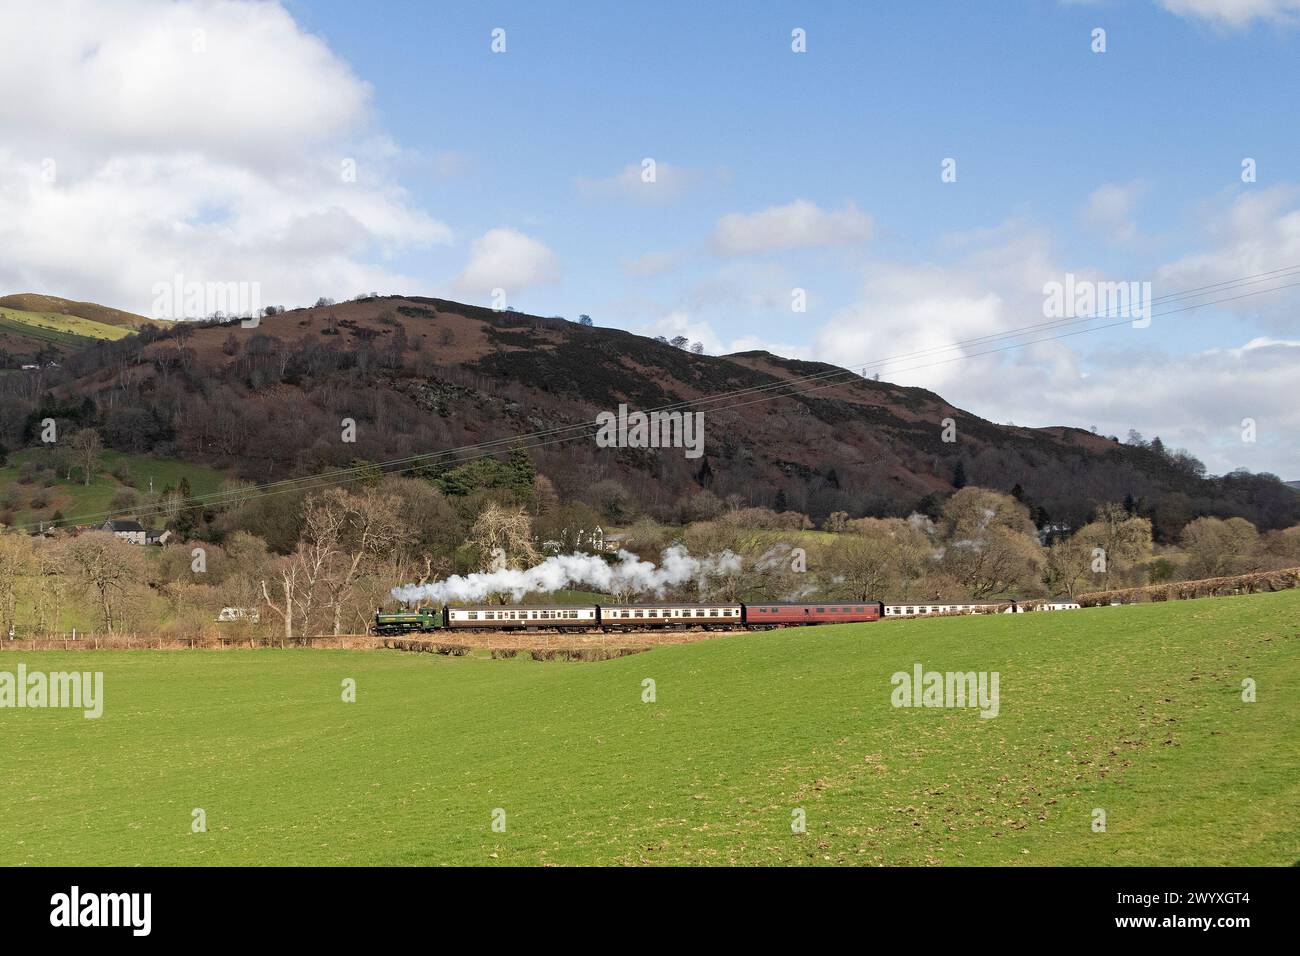 Train à vapeur Llangollen Railway près de Glyndyfrdwy, pays de Galles, Grande-Bretagne Banque D'Images